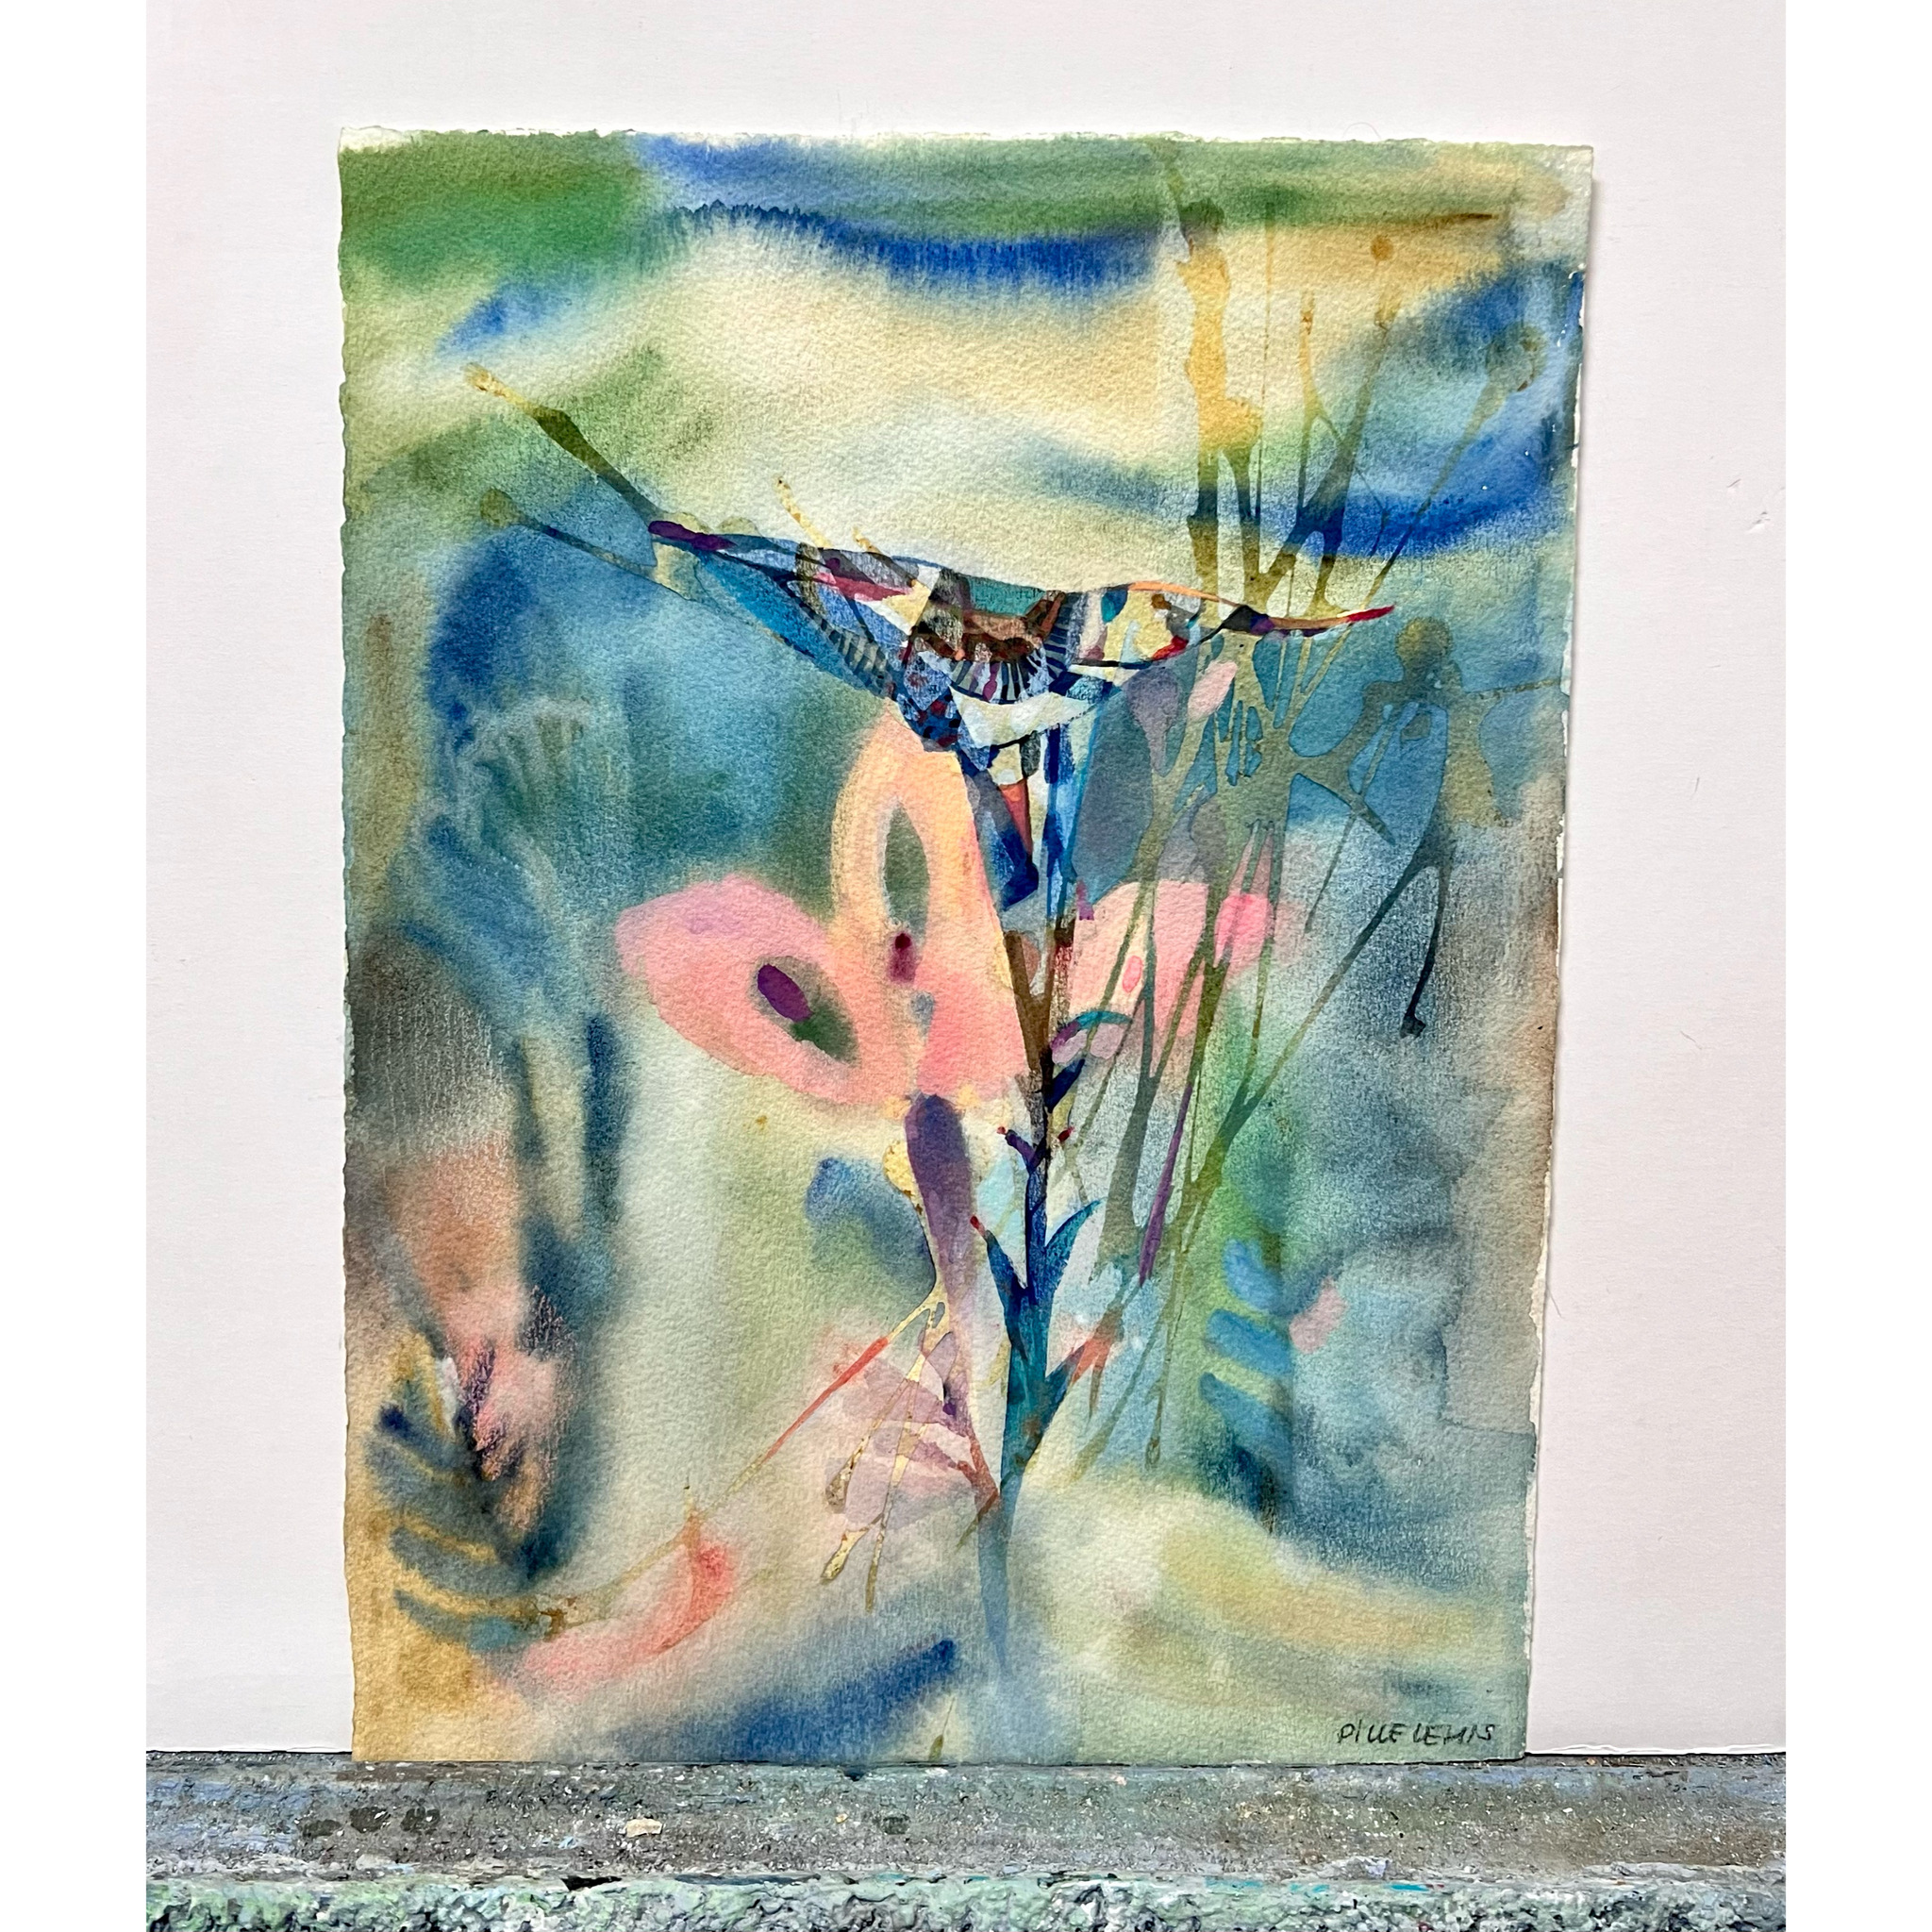 Pille Lehis, Akvarell, "Blomster" signerad, bladstorlek 28 x 38 cm.